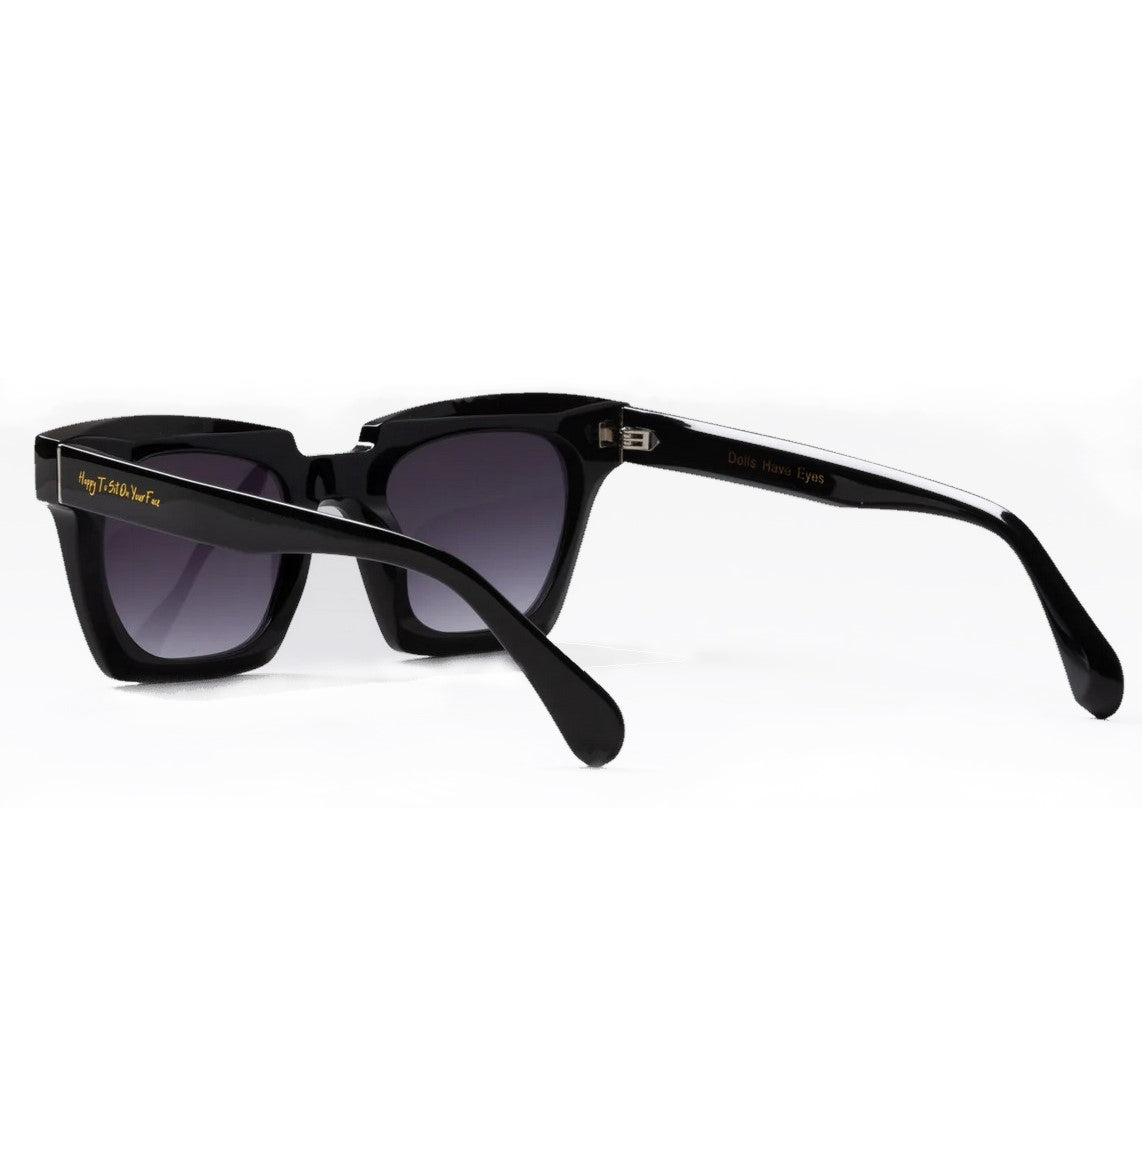 DOLLS Black Acetate Sunglasses